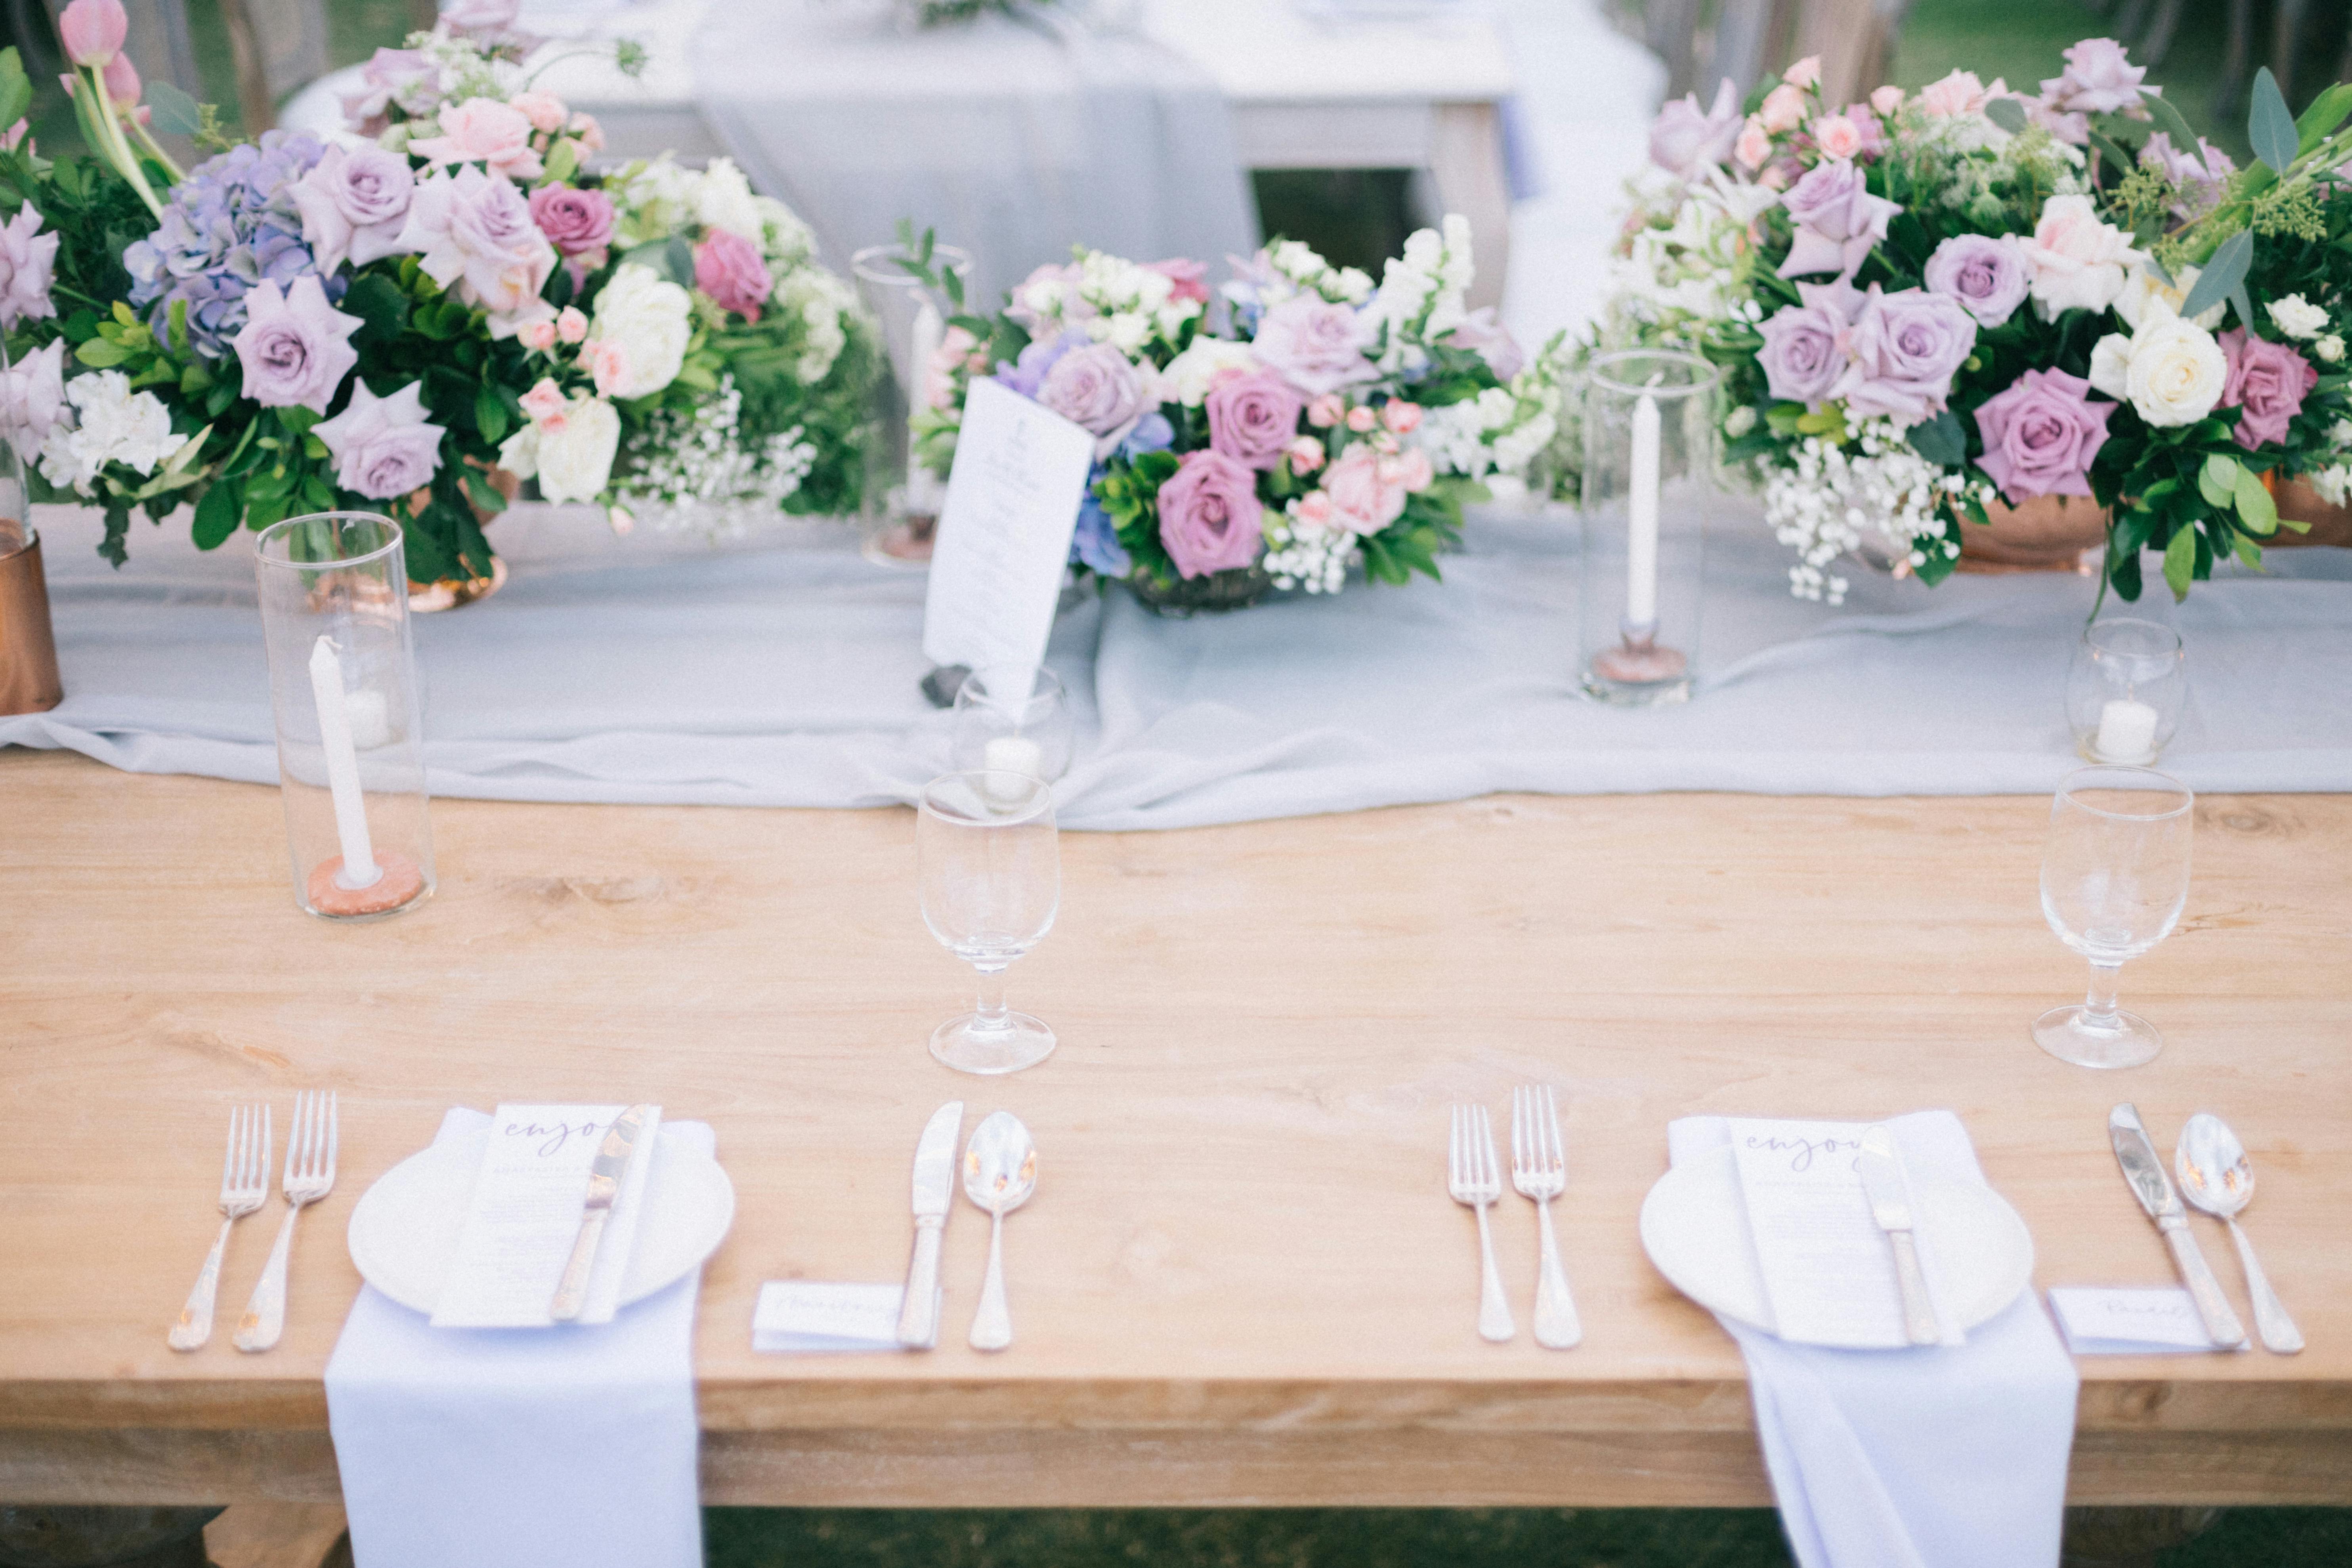 Une table de mariage | Source : Pexels